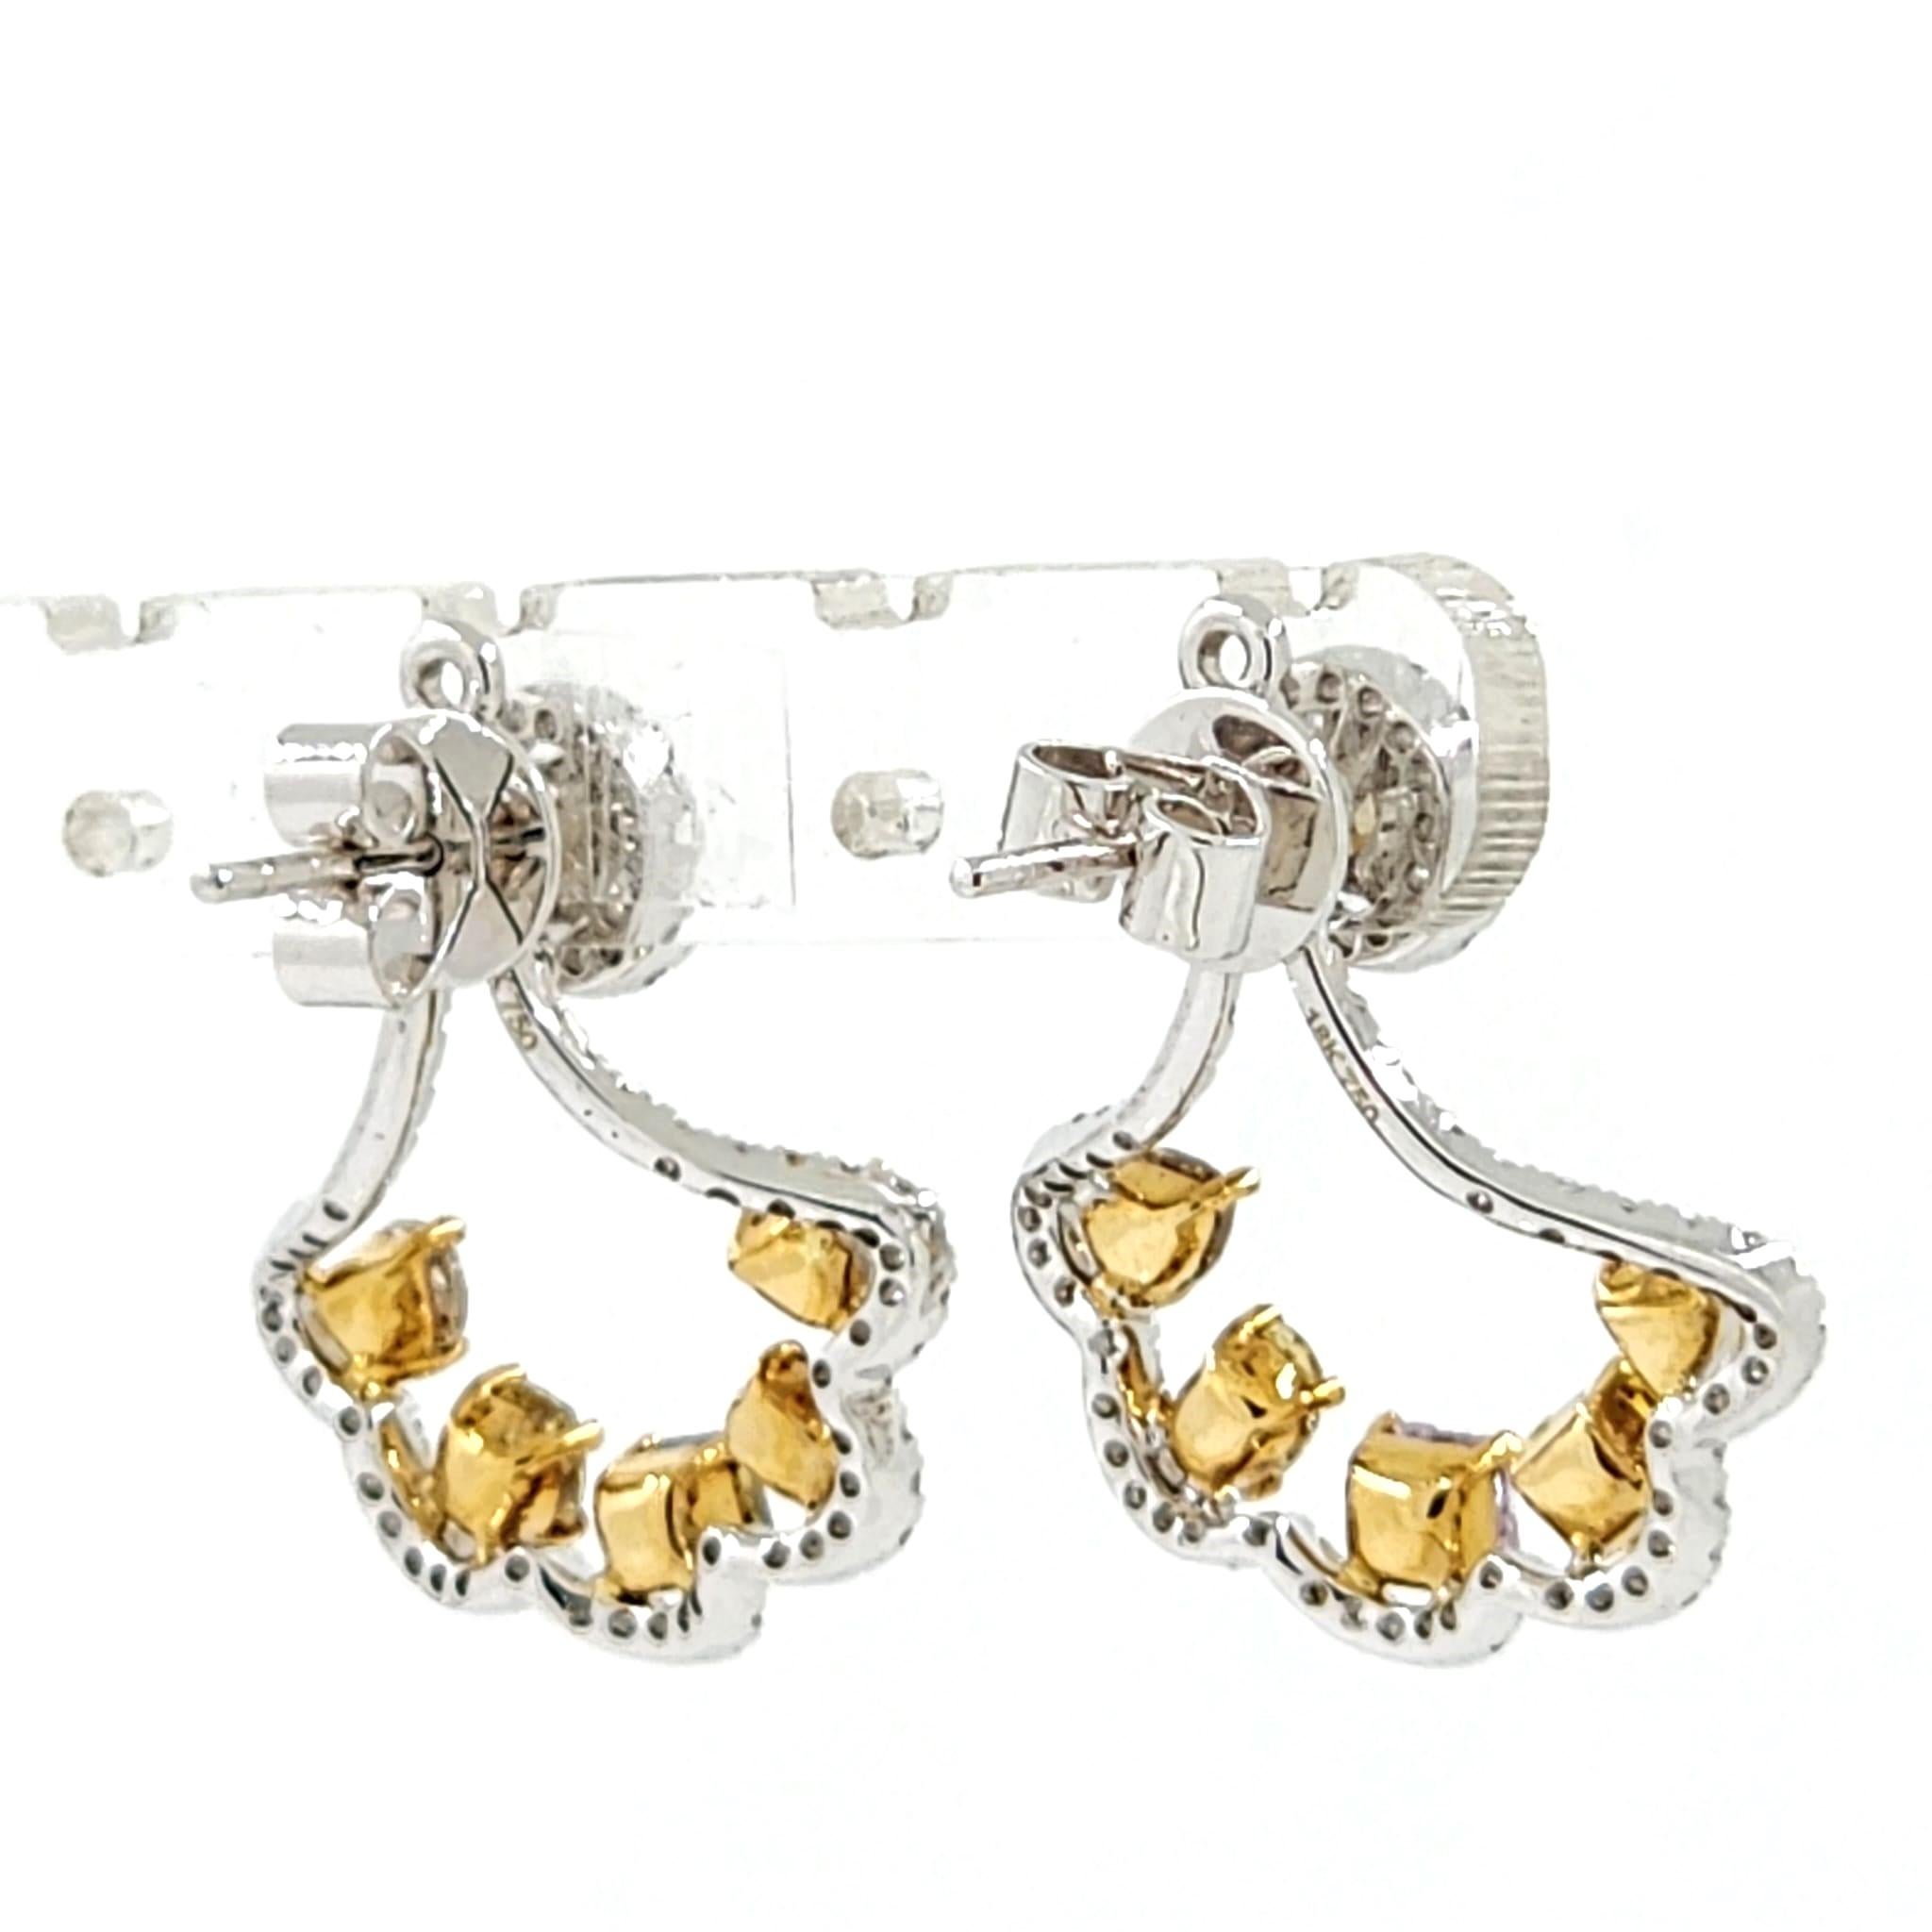 Wir präsentieren ein außergewöhnliches Accessoire, das Ihnen den Atem rauben wird - die 3,12ct Fancy Diamond Earrings Jacket in 18 Karat Weißgold. Diese spektakulären Ohrringe sind ein unvergessliches Statement und versprühen einen Charme, der sich